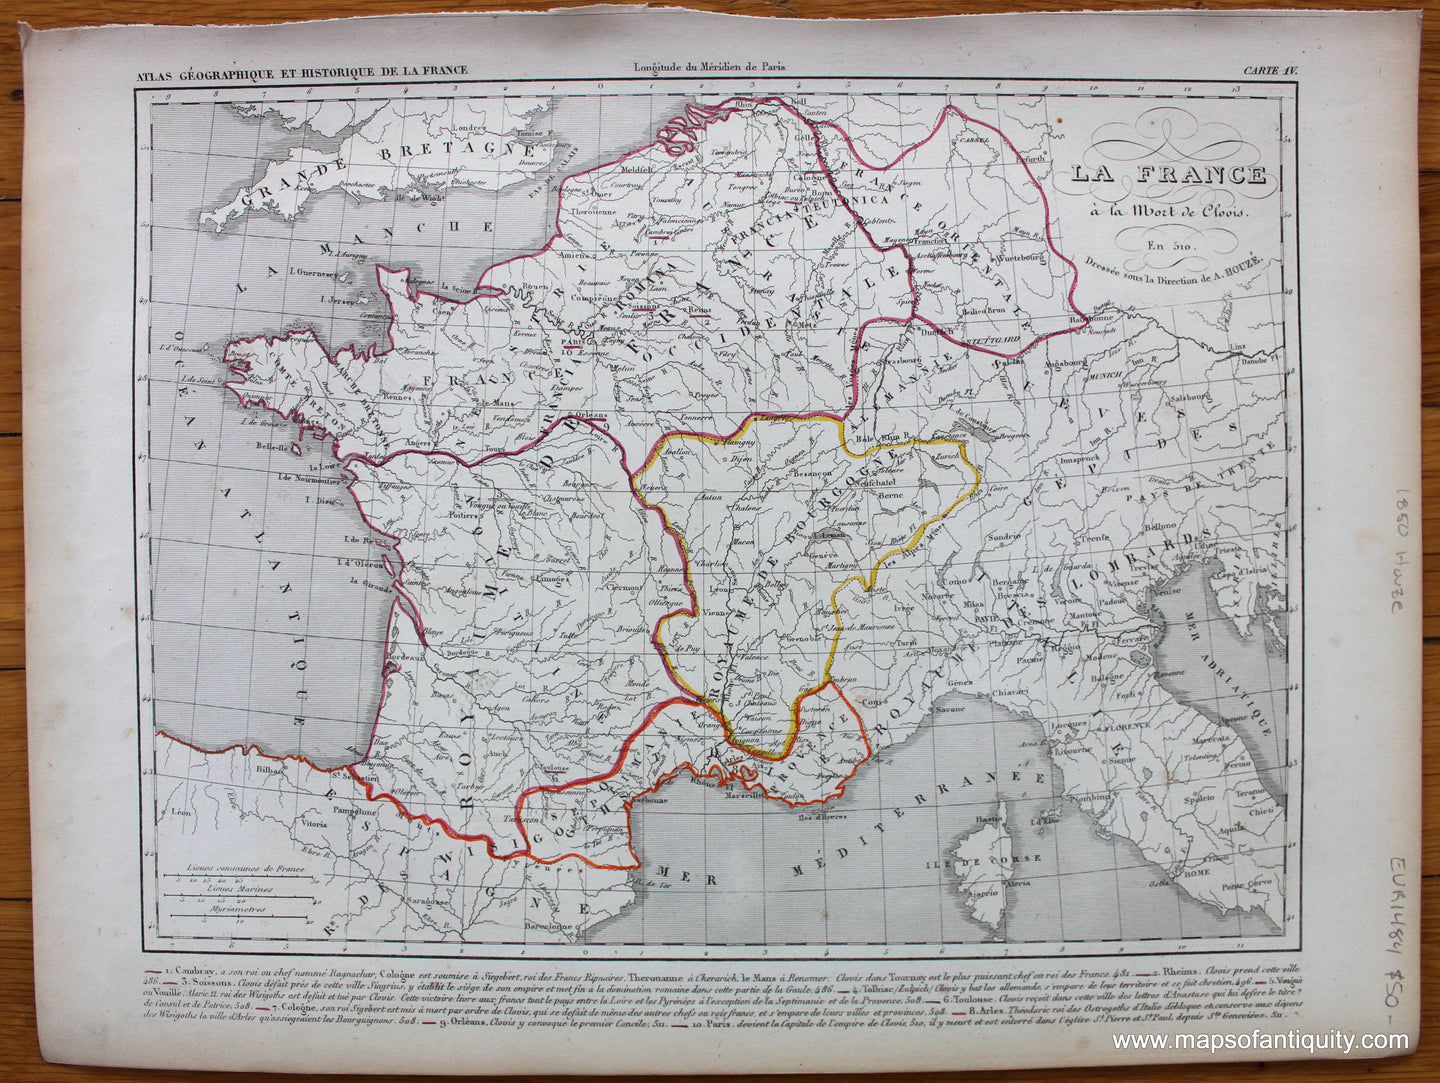 Antique-Hand-Colored-Map-La-France-a-la-Mort-de-Clovis-Europe-France-1850-Houze-Maps-Of-Antiquity